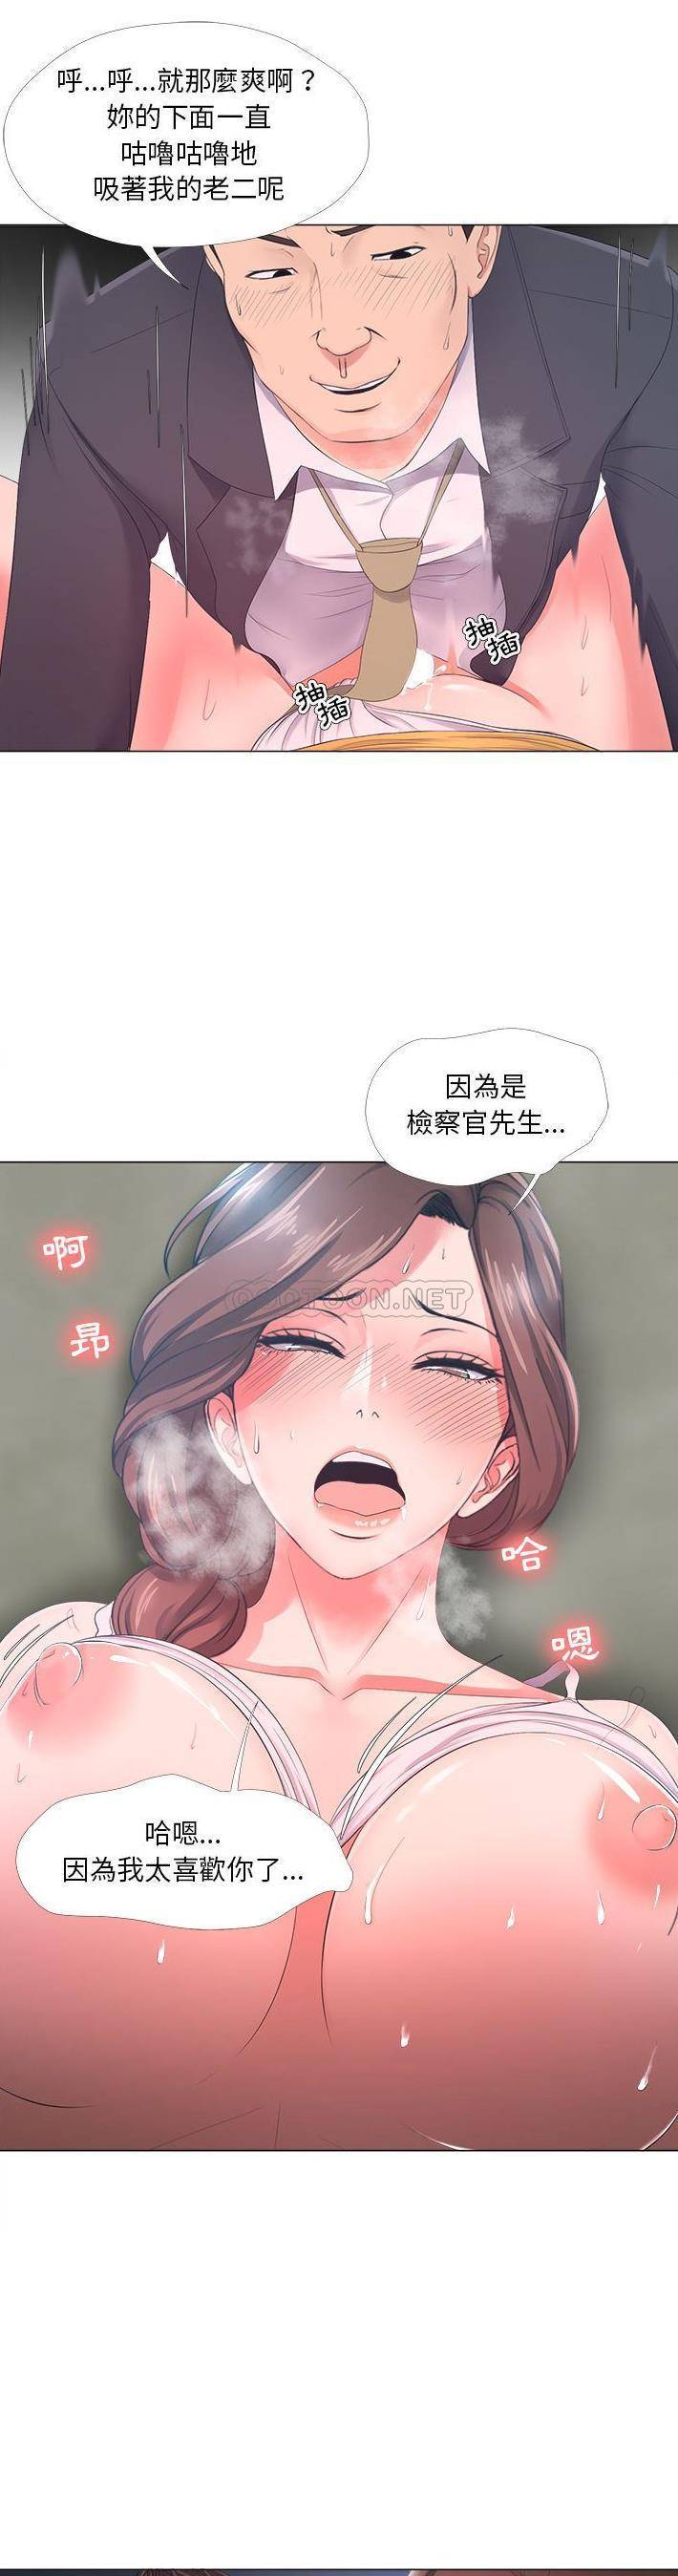 韩国污漫画 女人專門為難女人(女人的戰爭) 第25话 10